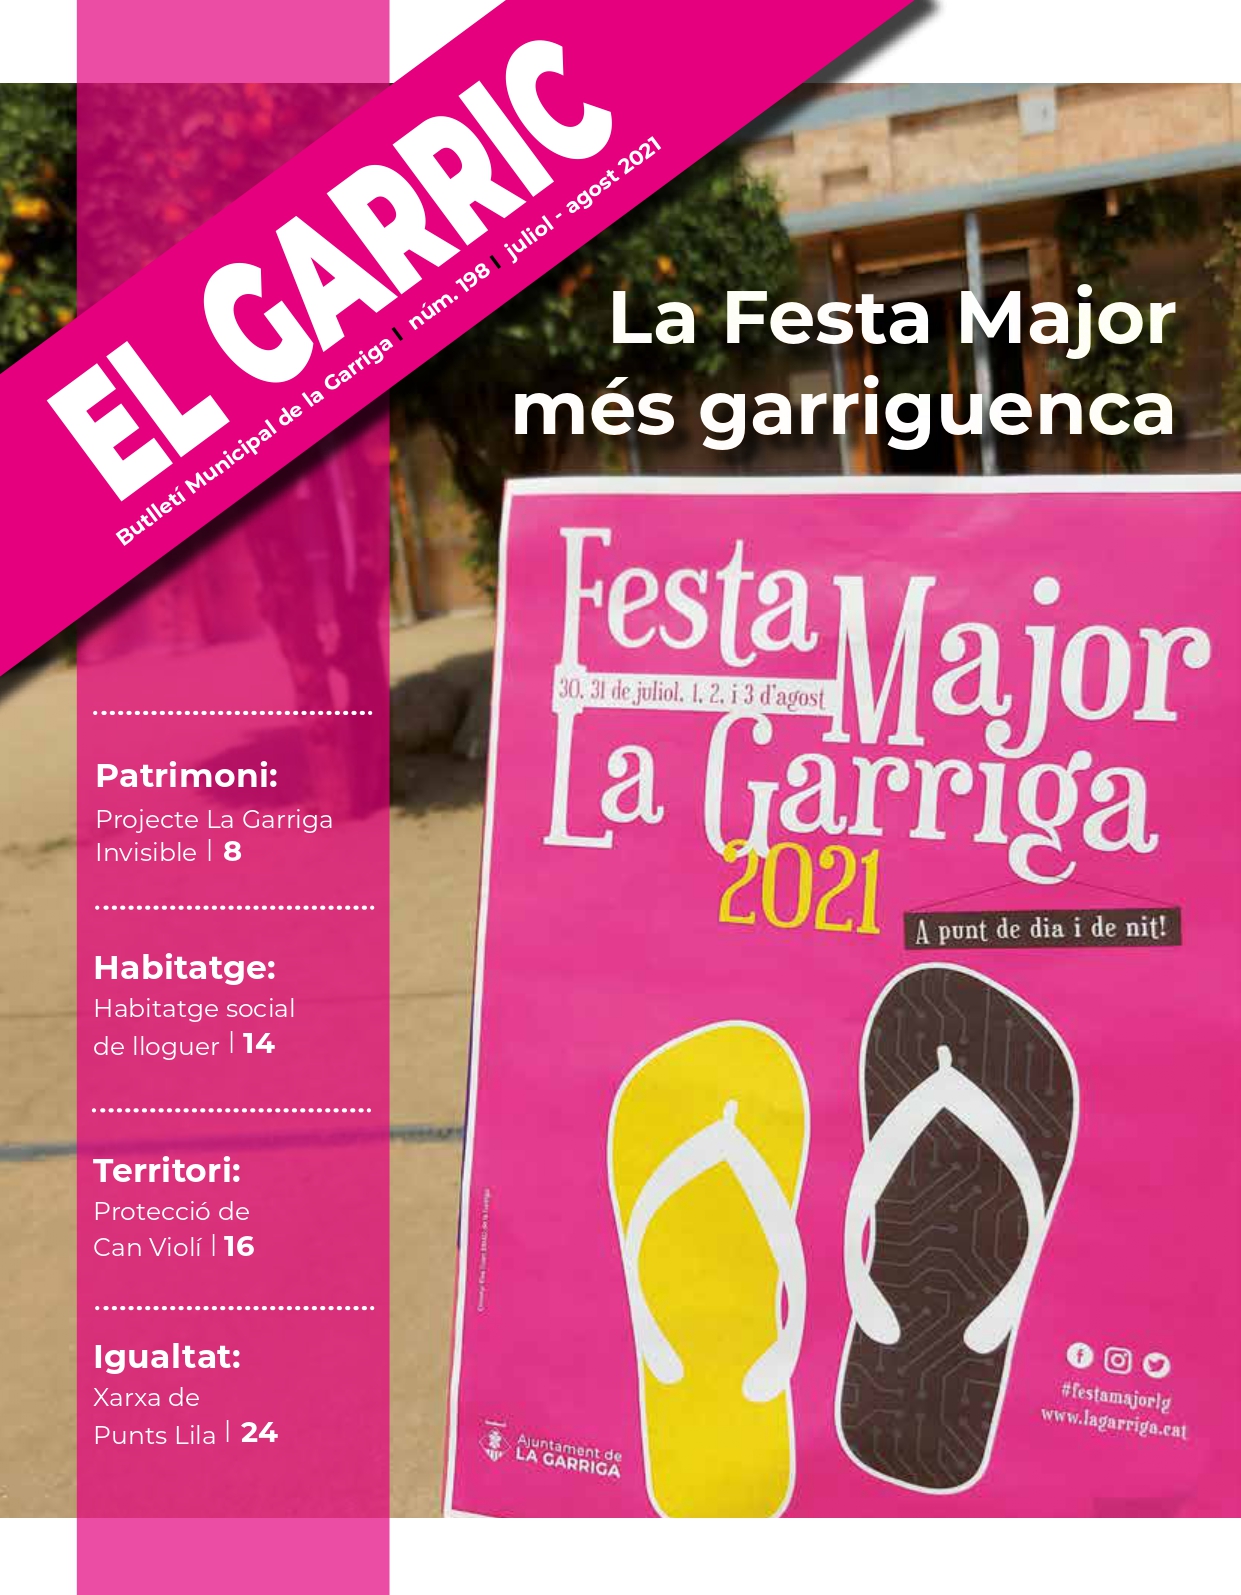 La Festa Major, portada d'El Garric